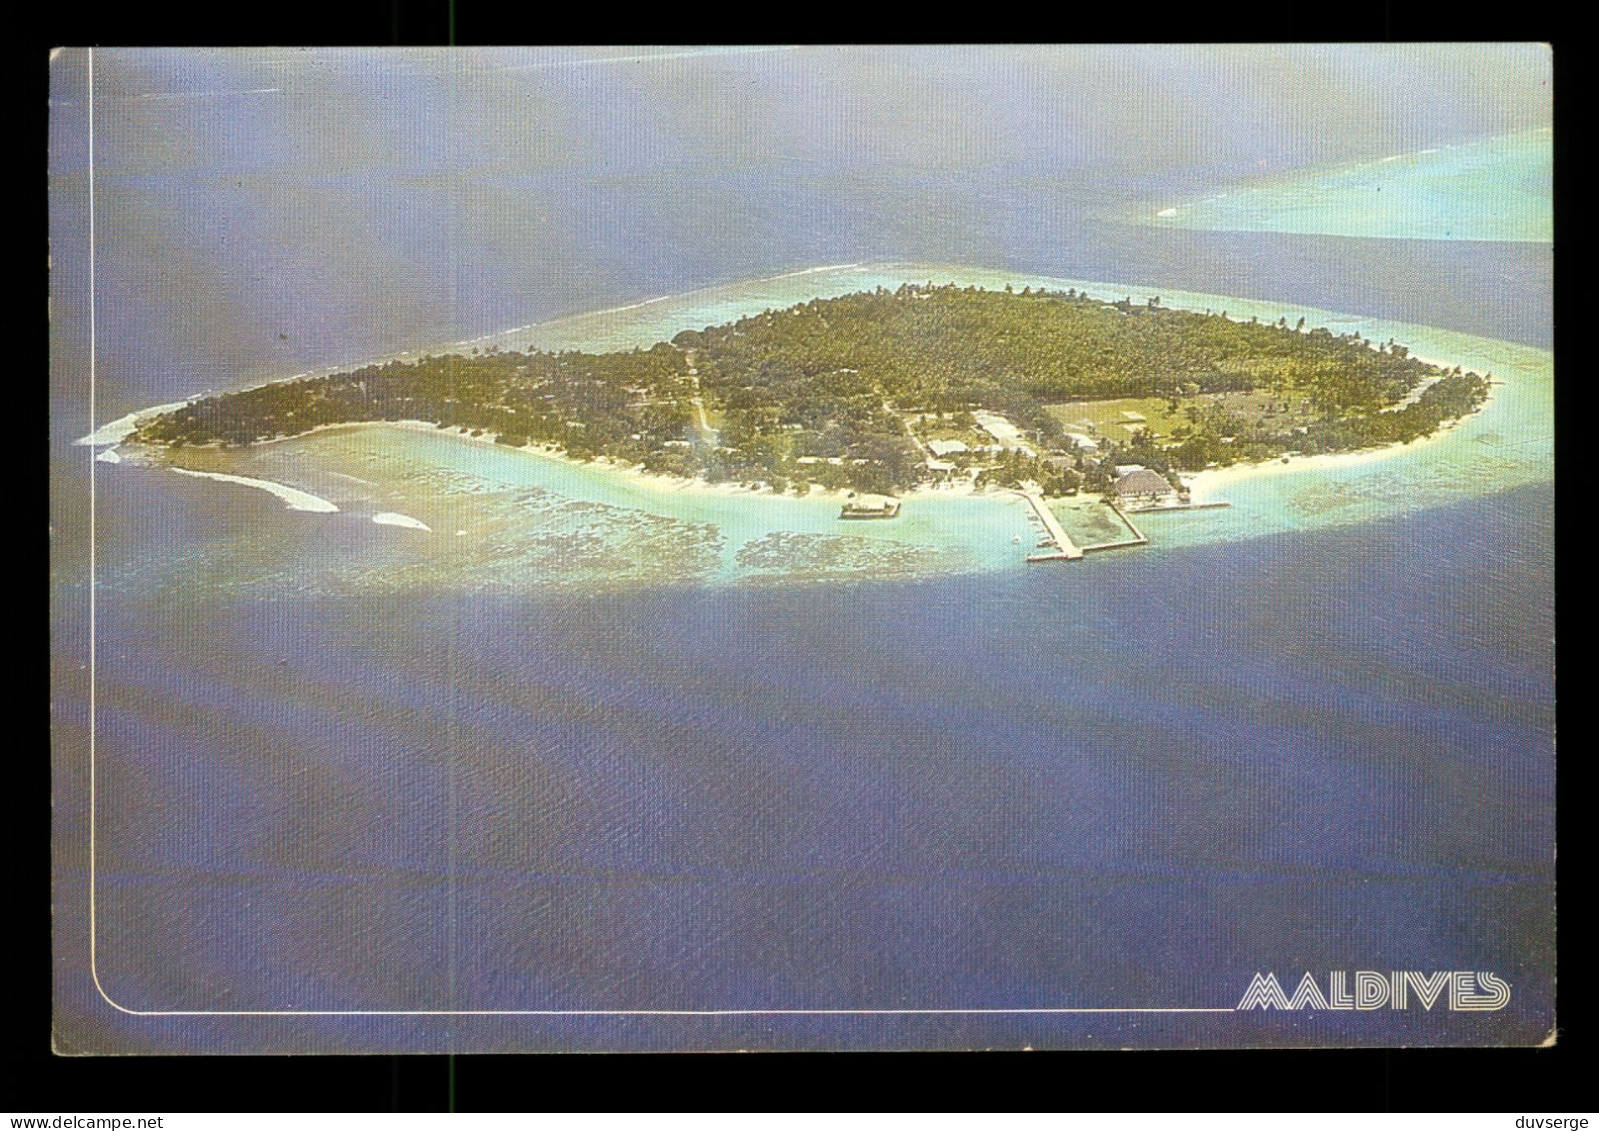 Maldives Resort Island In Male Atoll - Maldives